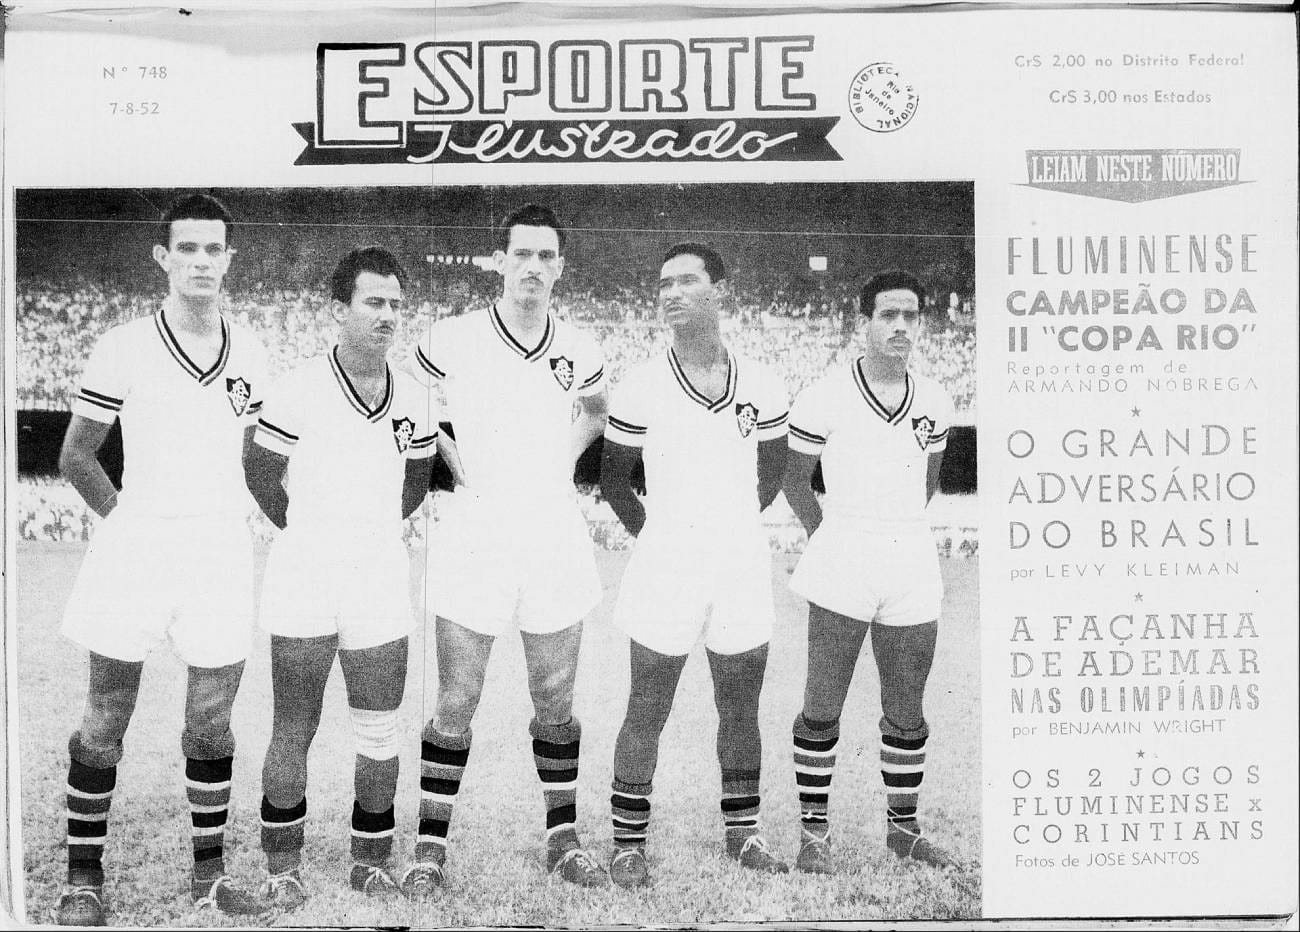 Fluminense campeão mundial se a fifa reconhecer a copa Rio em 1952